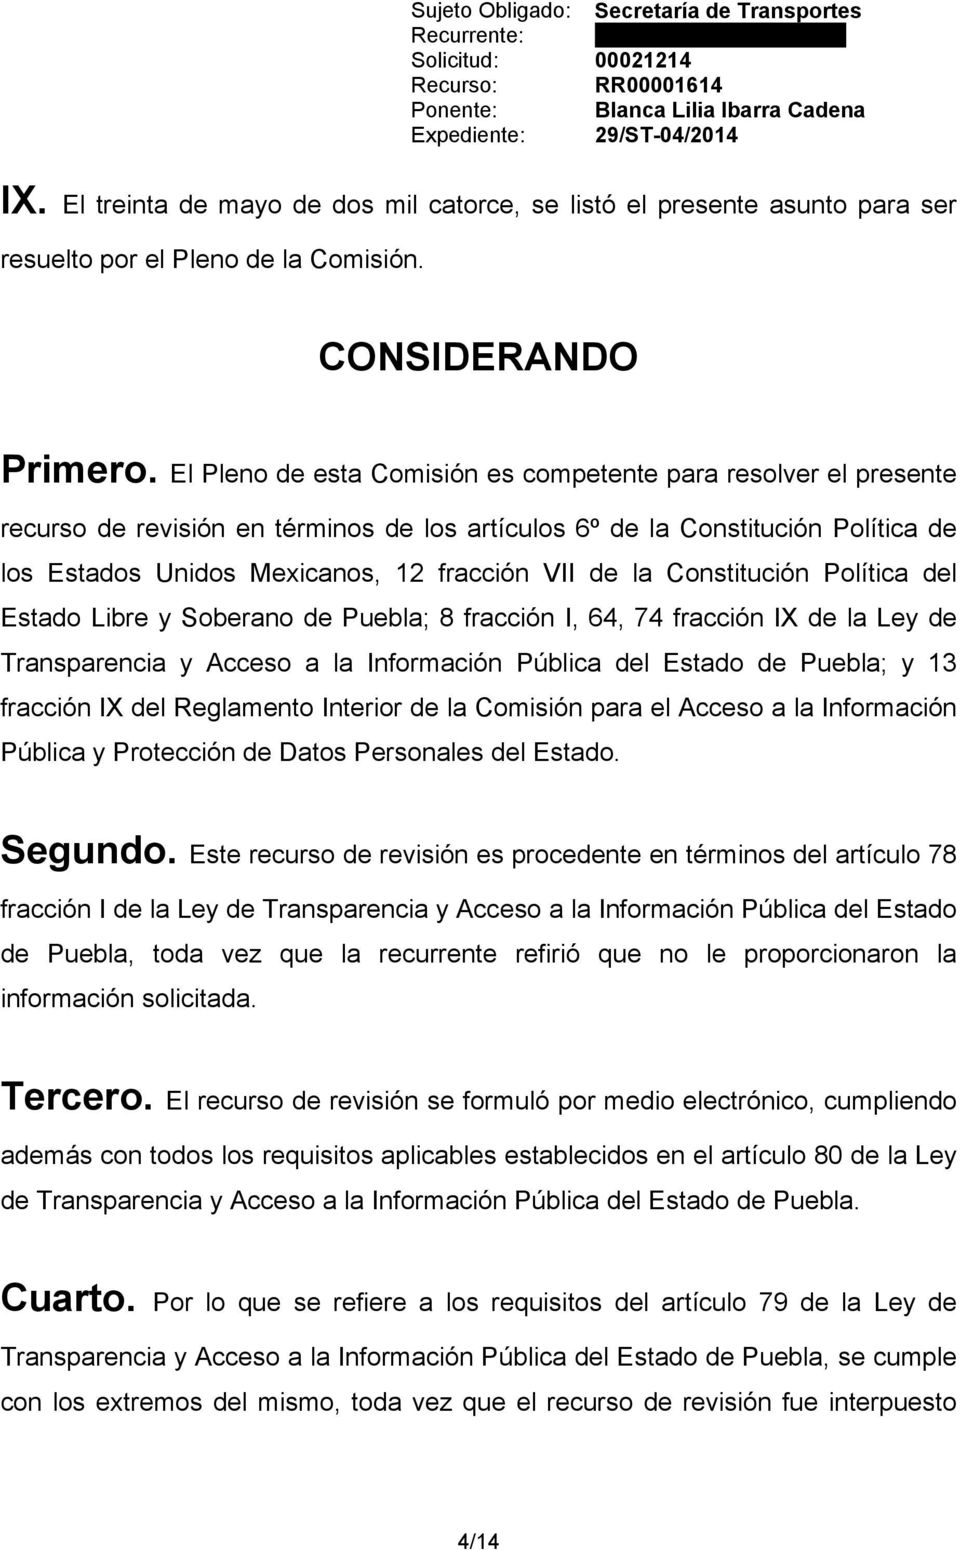 la Constitución Política del Estado Libre y Soberano de Puebla; 8 fracción I, 64, 74 fracción IX de la Ley de Transparencia y Acceso a la Información Pública del Estado de Puebla; y 13 fracción IX